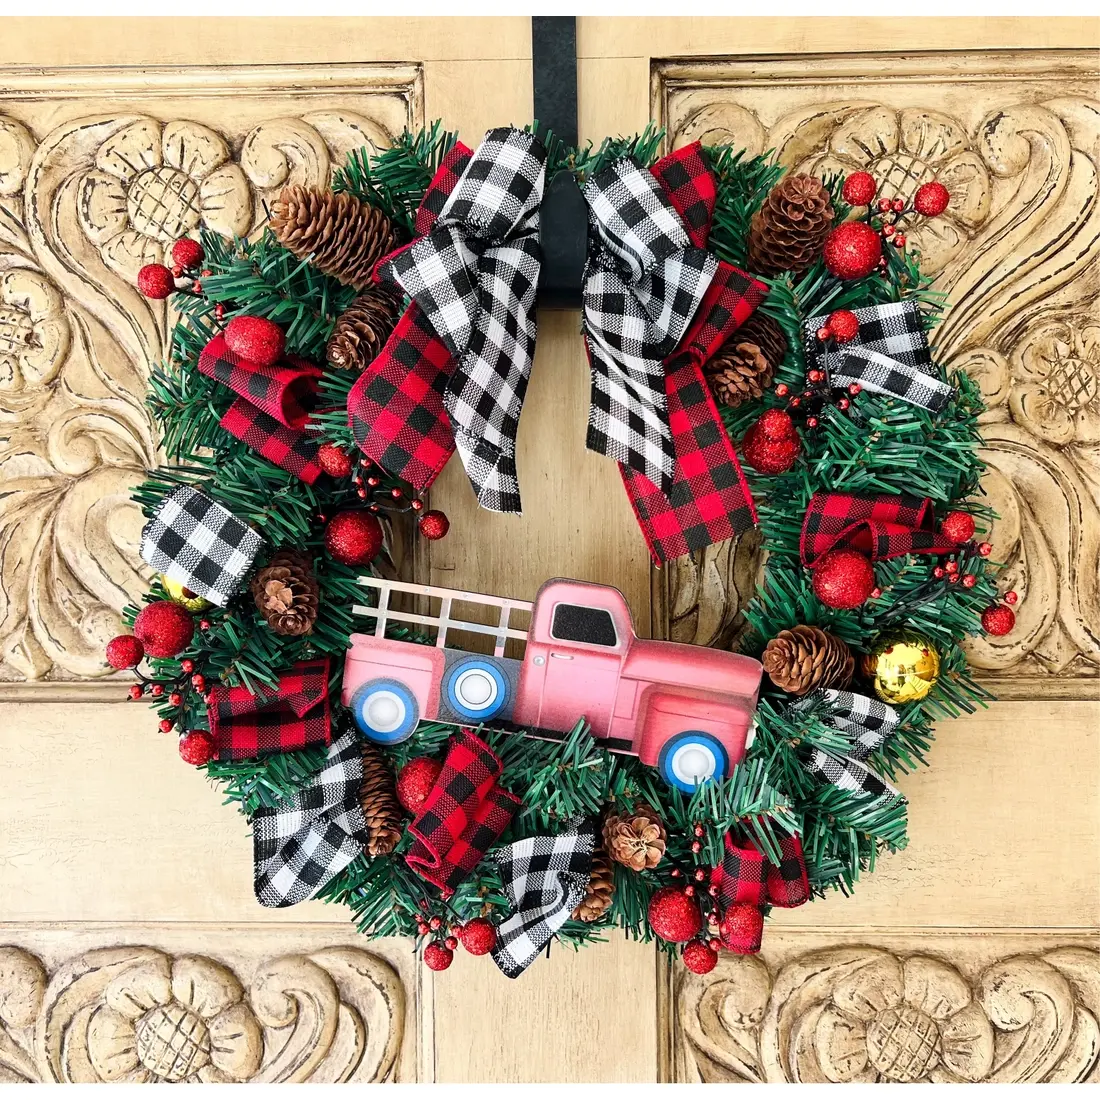 15” Holiday Door Wreath $25.98 - MSRP